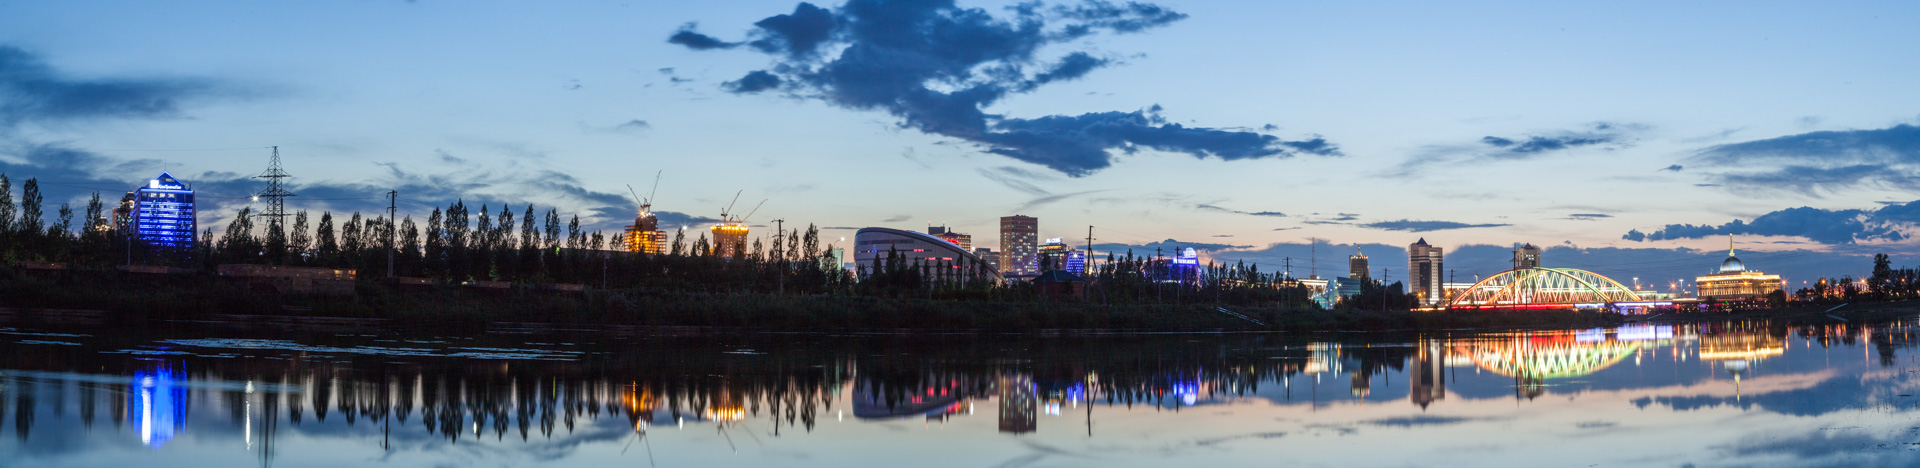 ночная Астана панорама